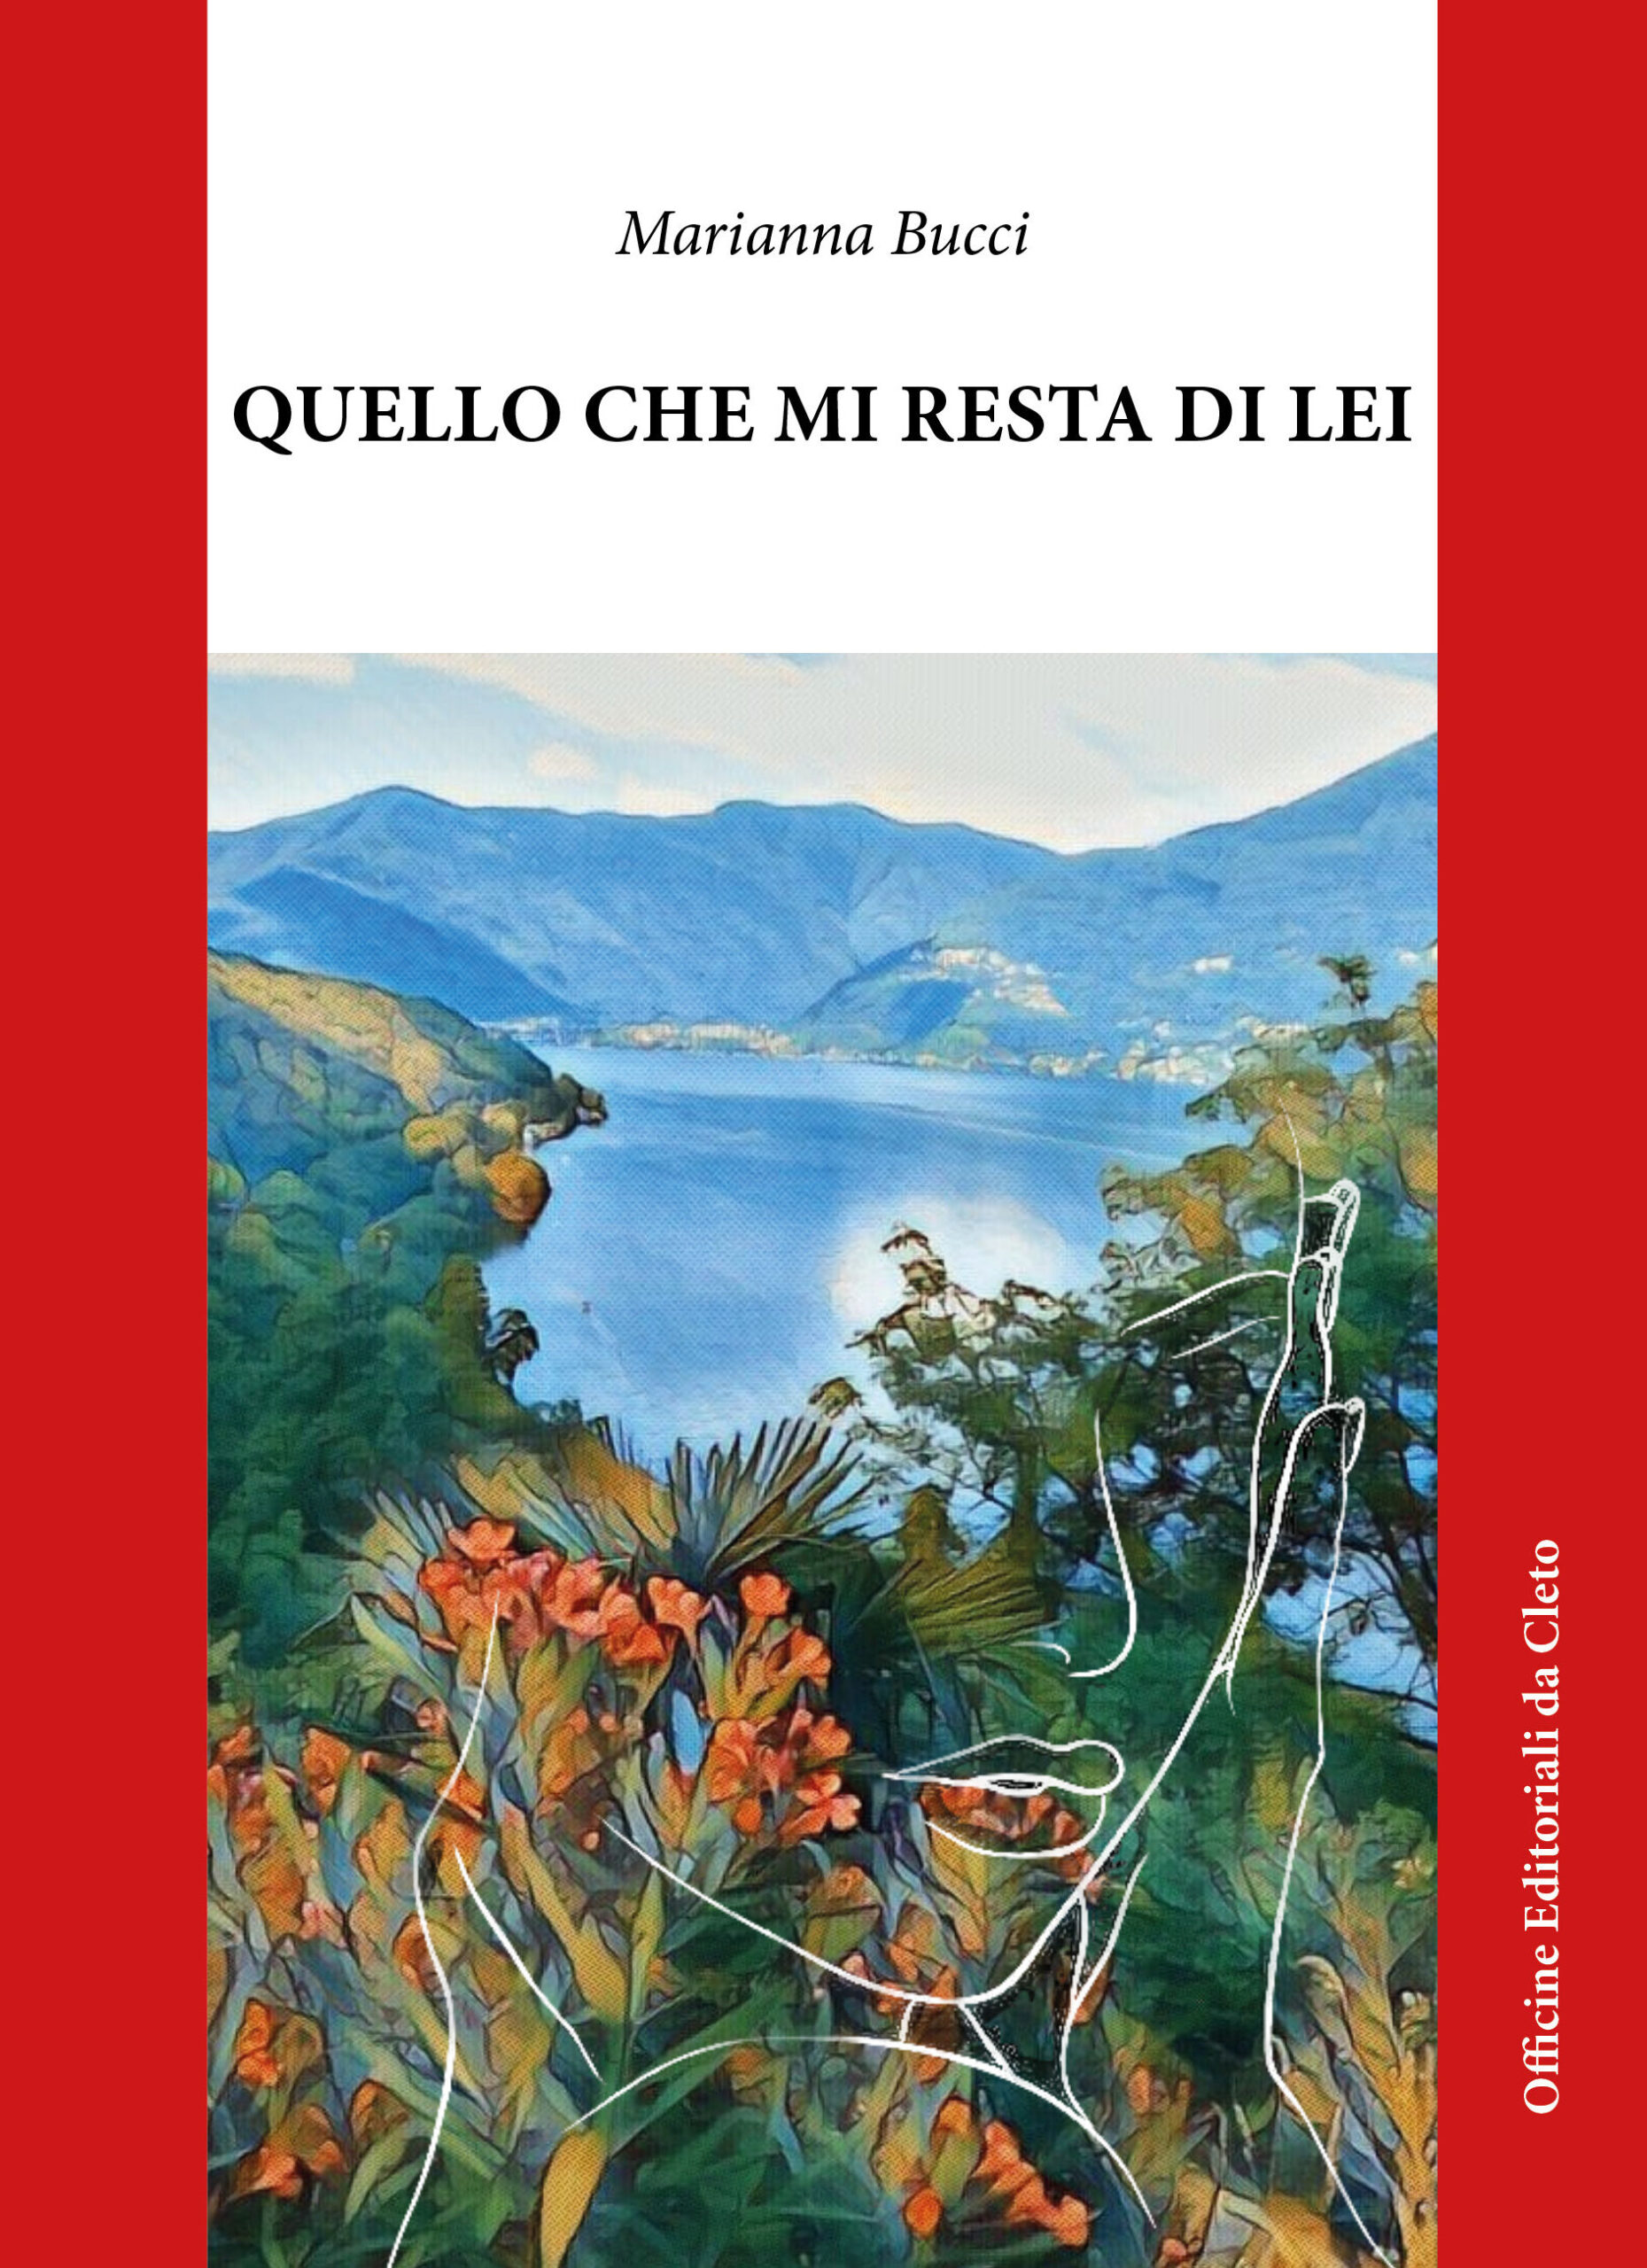 La copertina del libro dal titolo QUELLO CHE MI RESTA DI LEI di Marianna Bucci